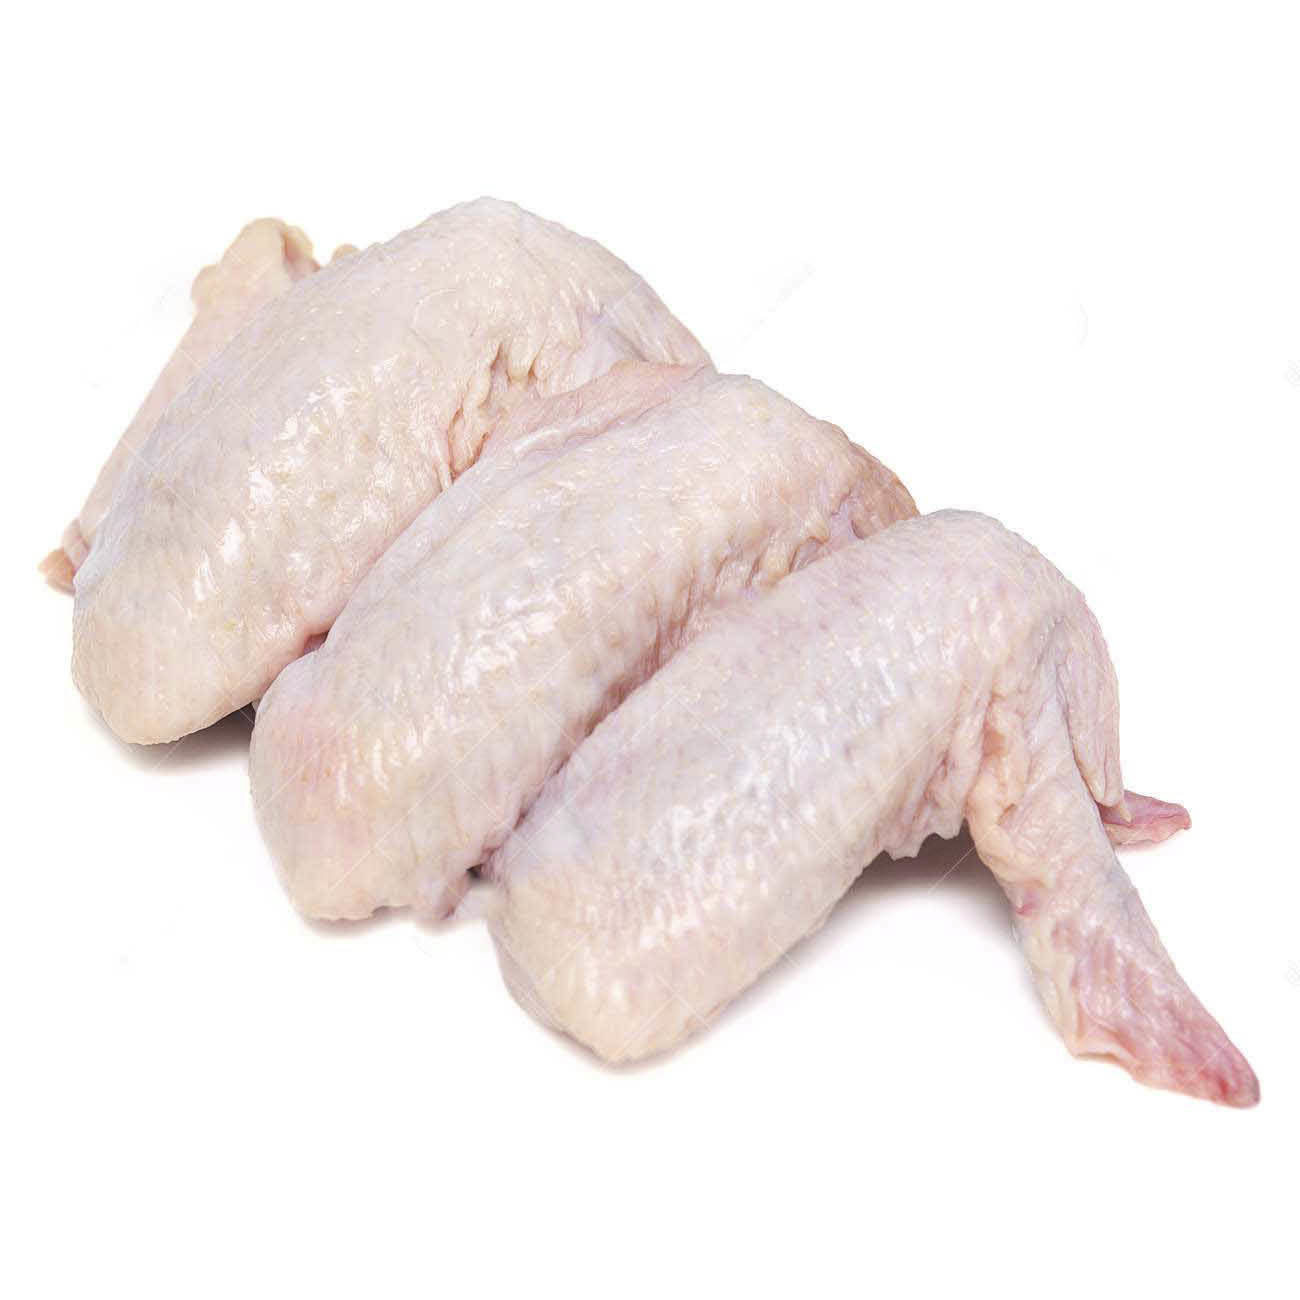 Cánh gà 8-9 cái/kg (200g)